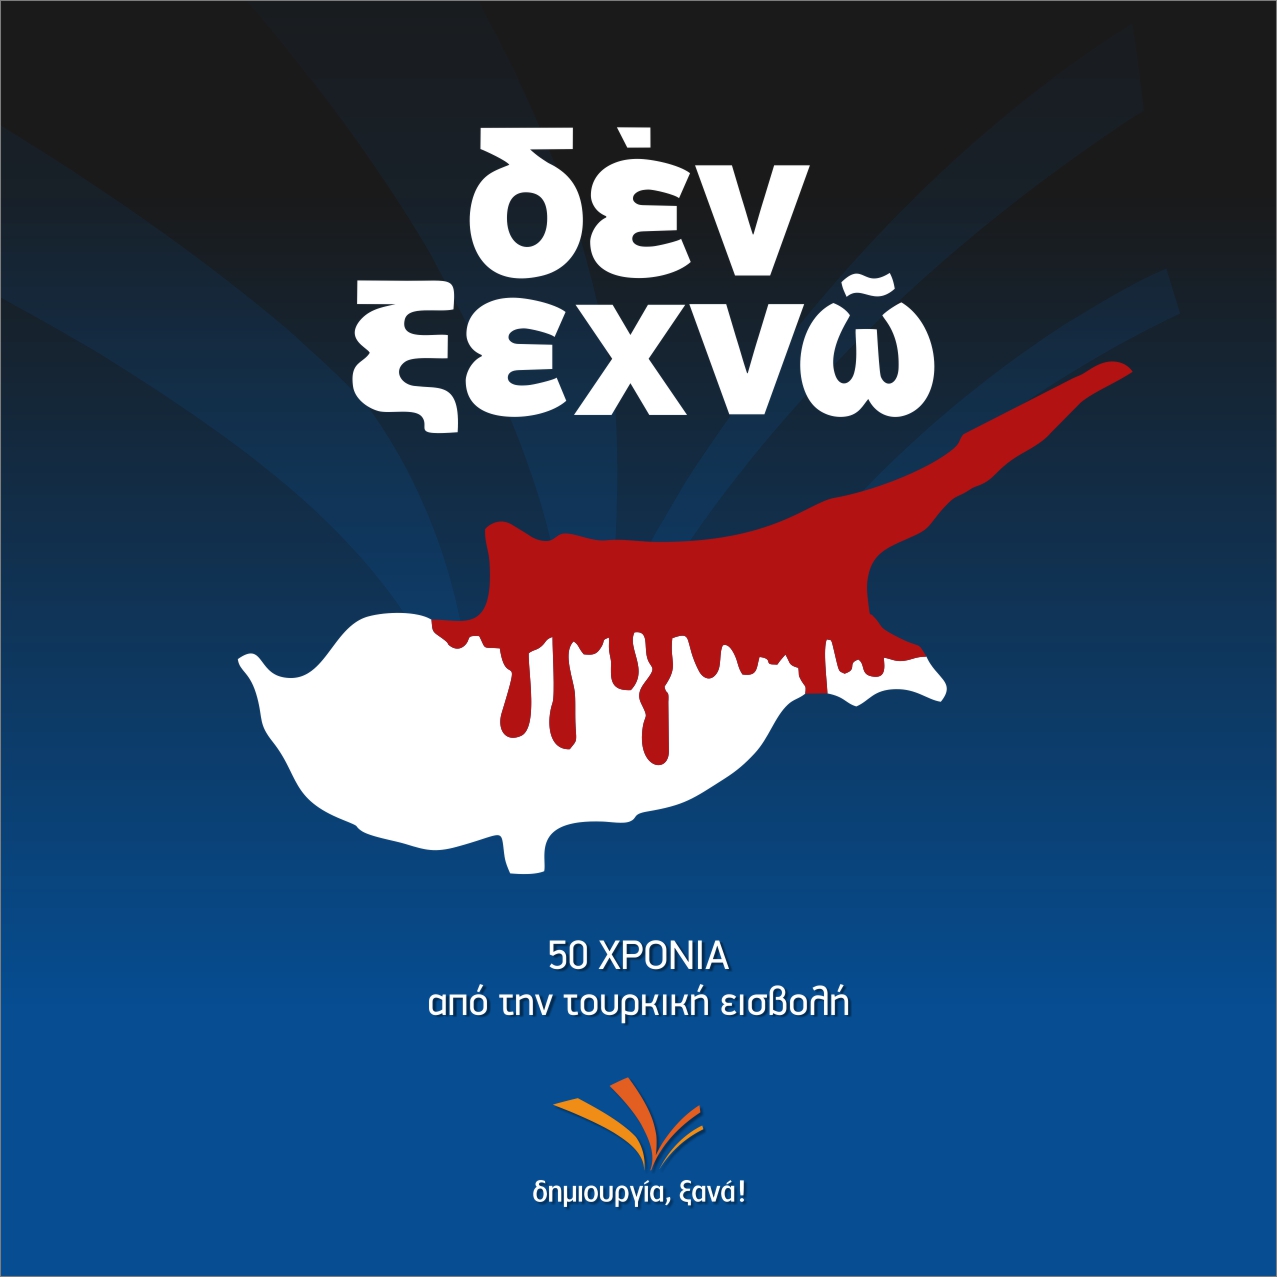 ΔΗΜΙΟΥΡΓΙΑ - δεν ξεχνώ την Κύπρο